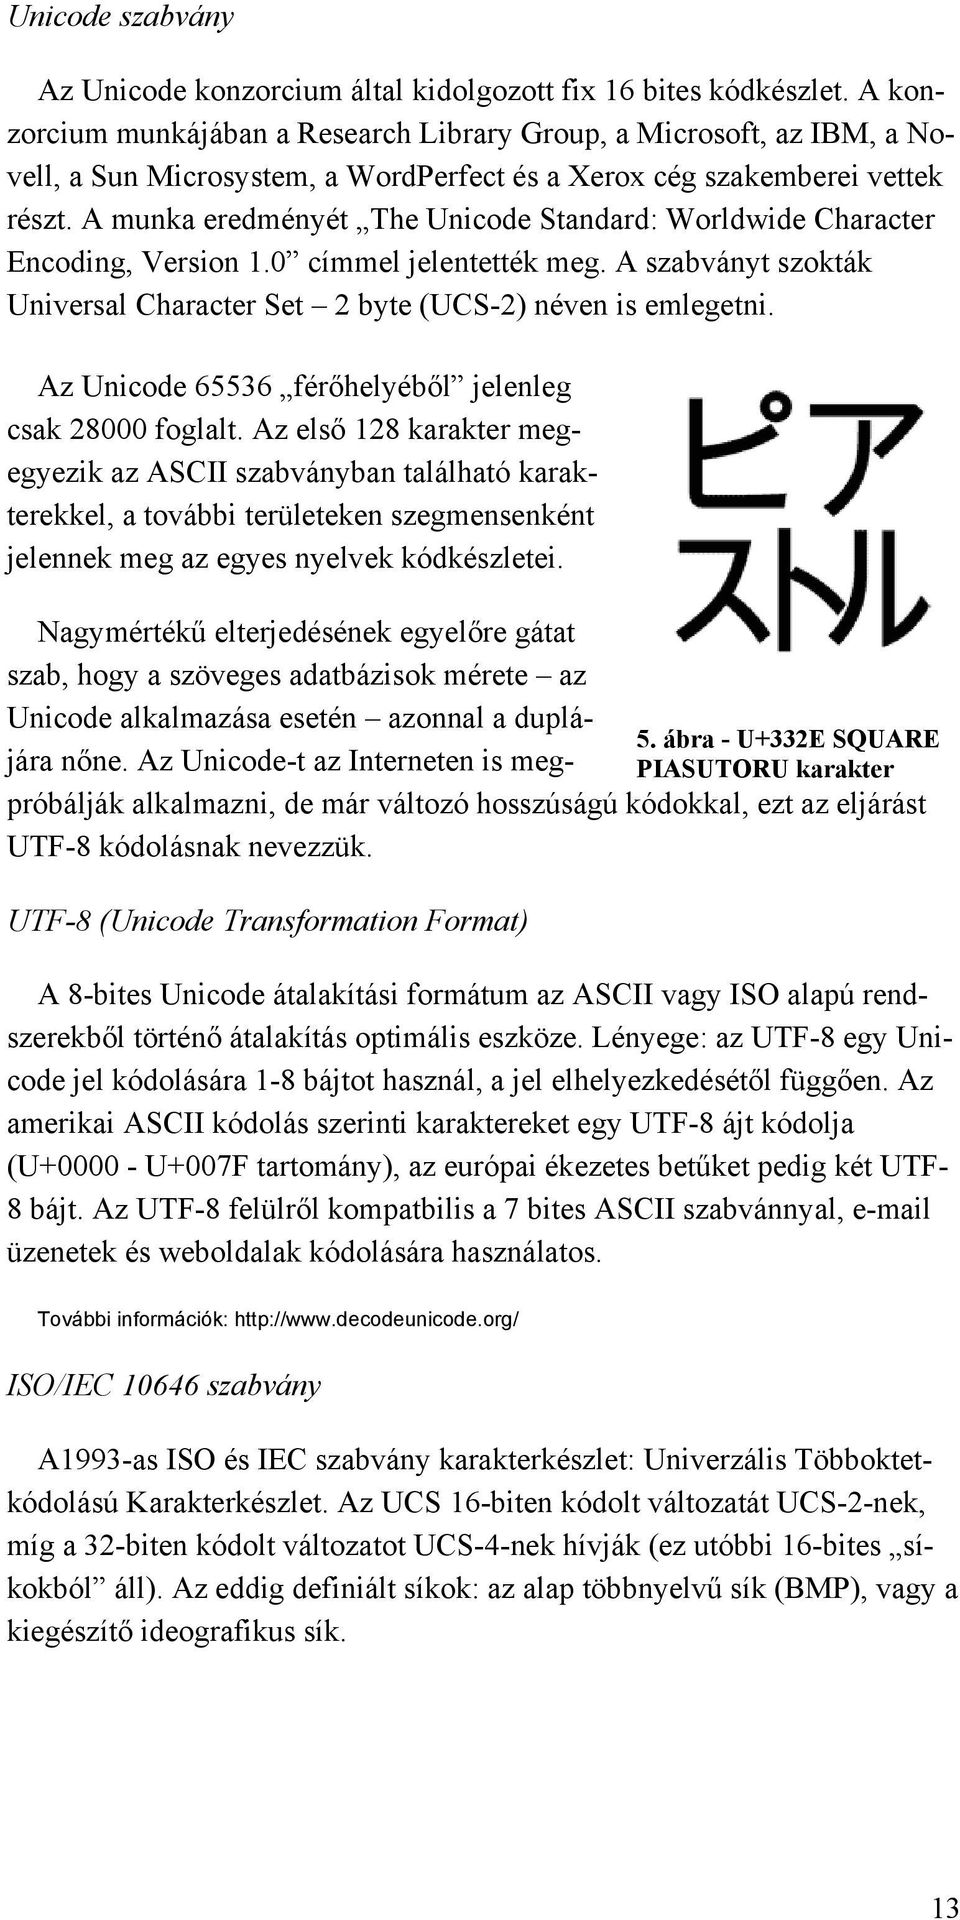 A munka eredményét The Unicode Standard: Worldwide Character Encoding, Version 1.0 címmel jelentették meg. A szabványt szokták Universal Character Set 2 byte (UCS-2) néven is emlegetni.